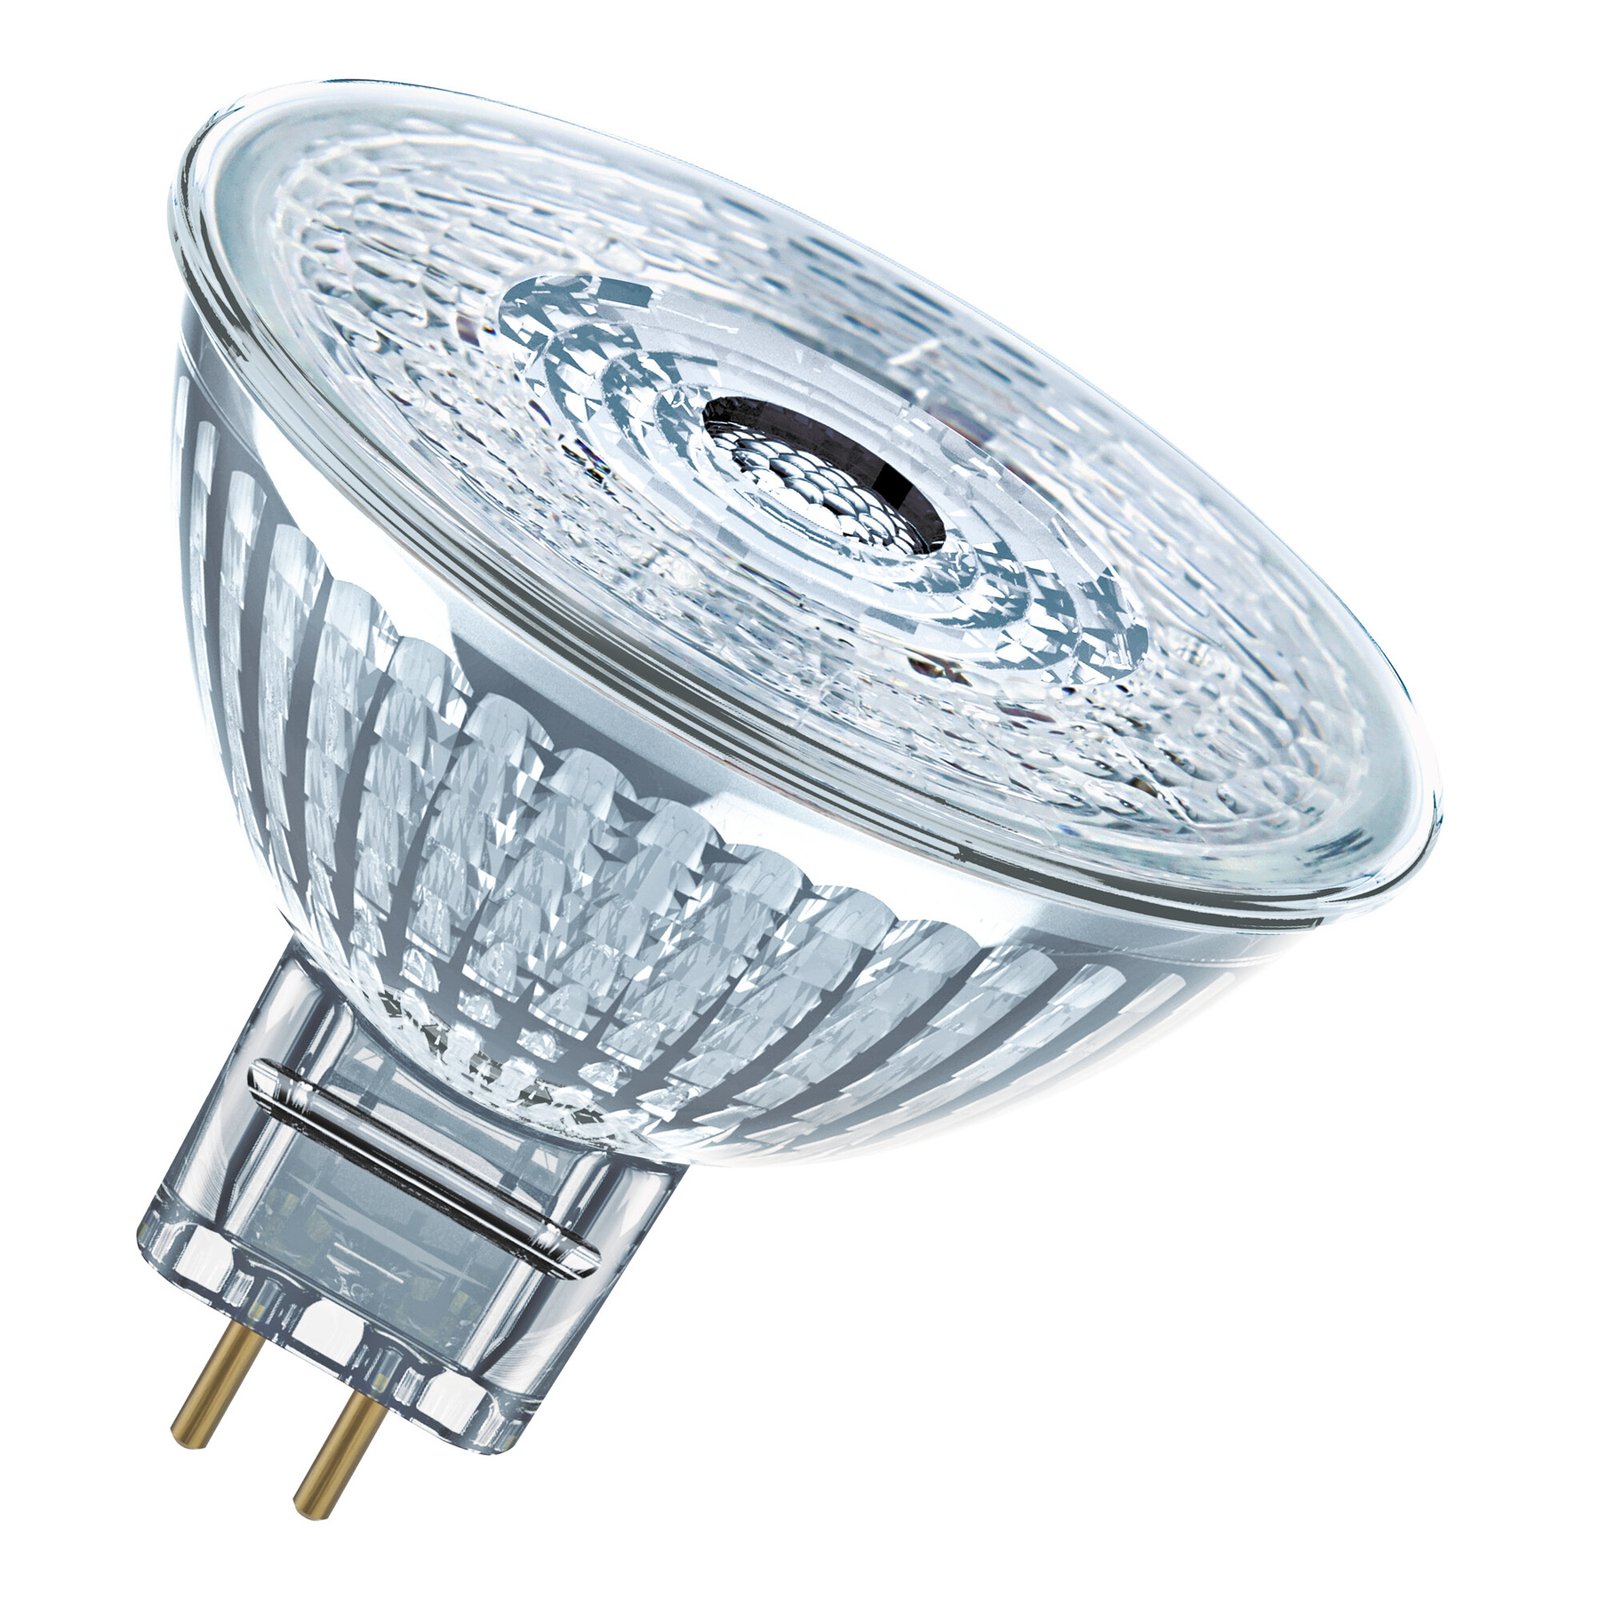 OSRAM reflector LED bulb GU5.3 3.4W 927 12V dim